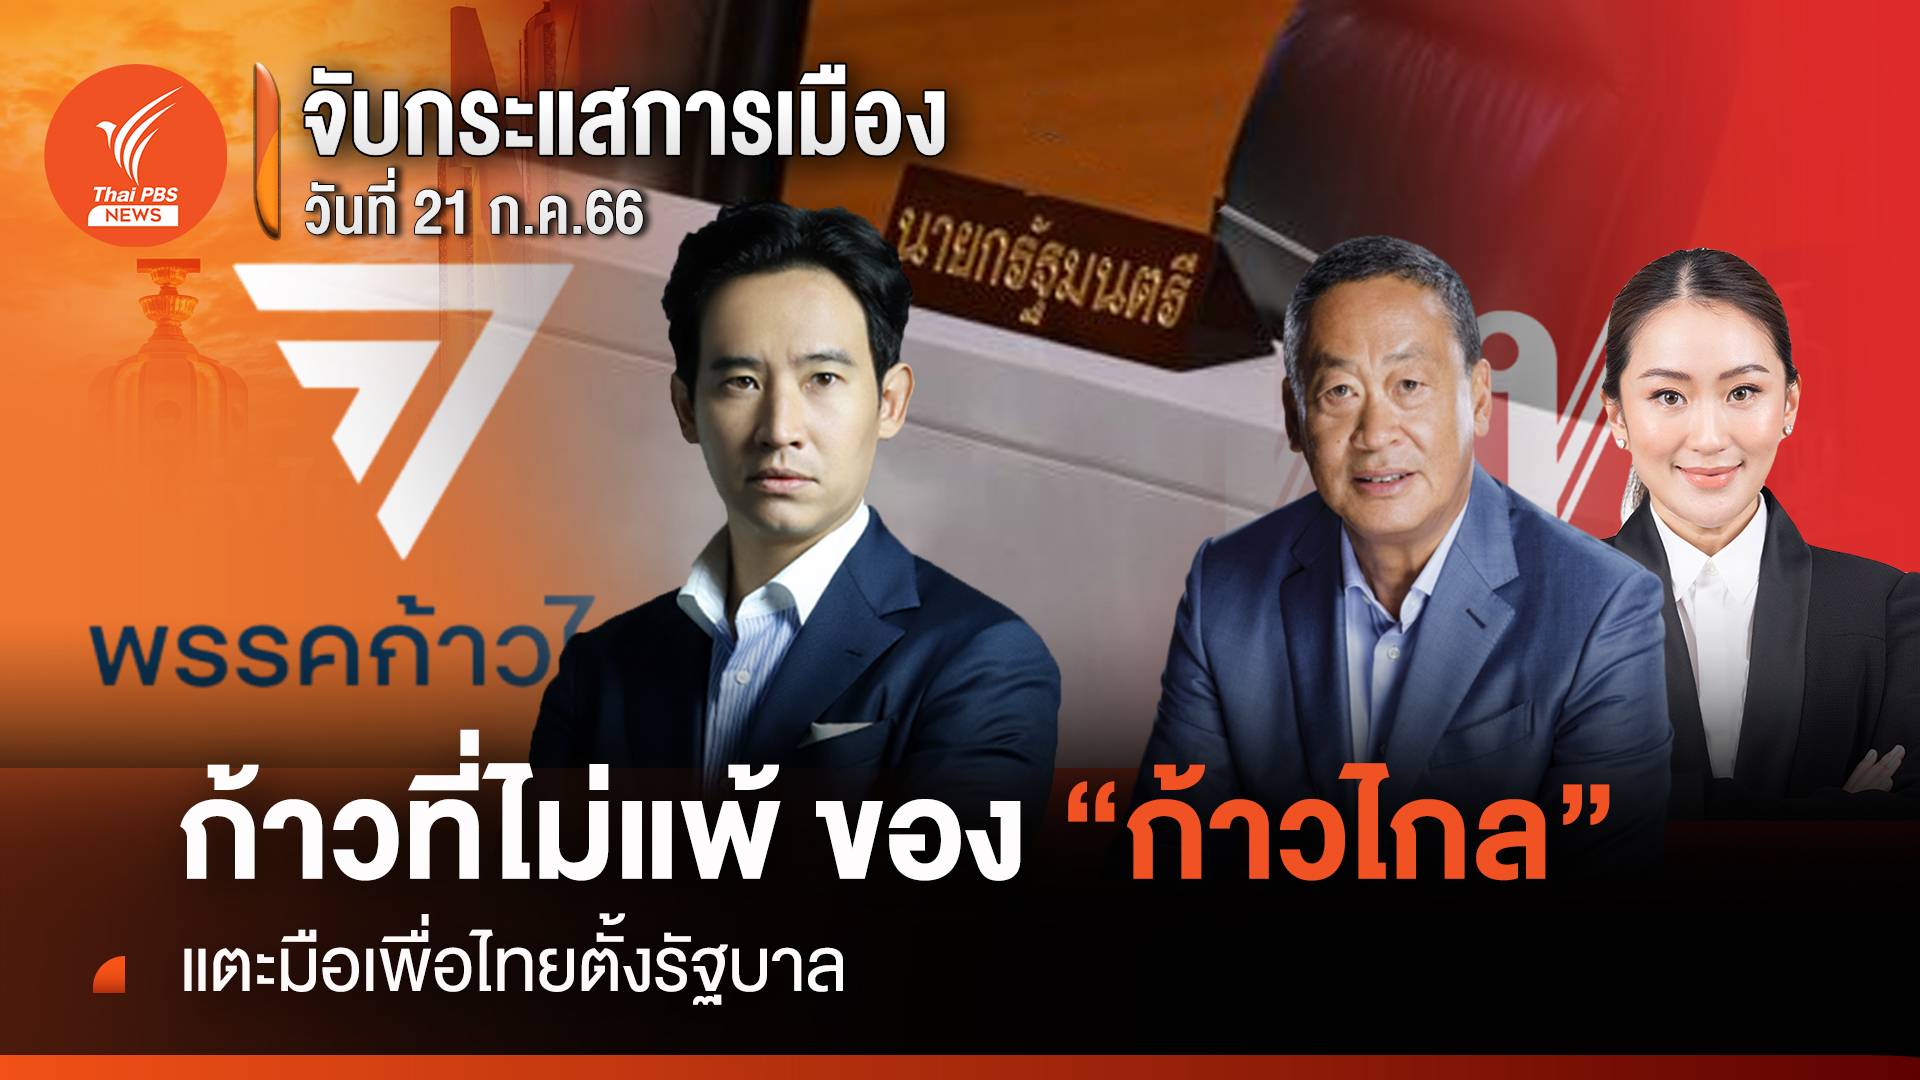 จับกระแสการเมือง: วันที่ 21 ก.ค.2566 ก้าวที่ไม่แพ้ ของ “ก้าวไกล” แตะมือเพื่อไทยตั้งรัฐบาล